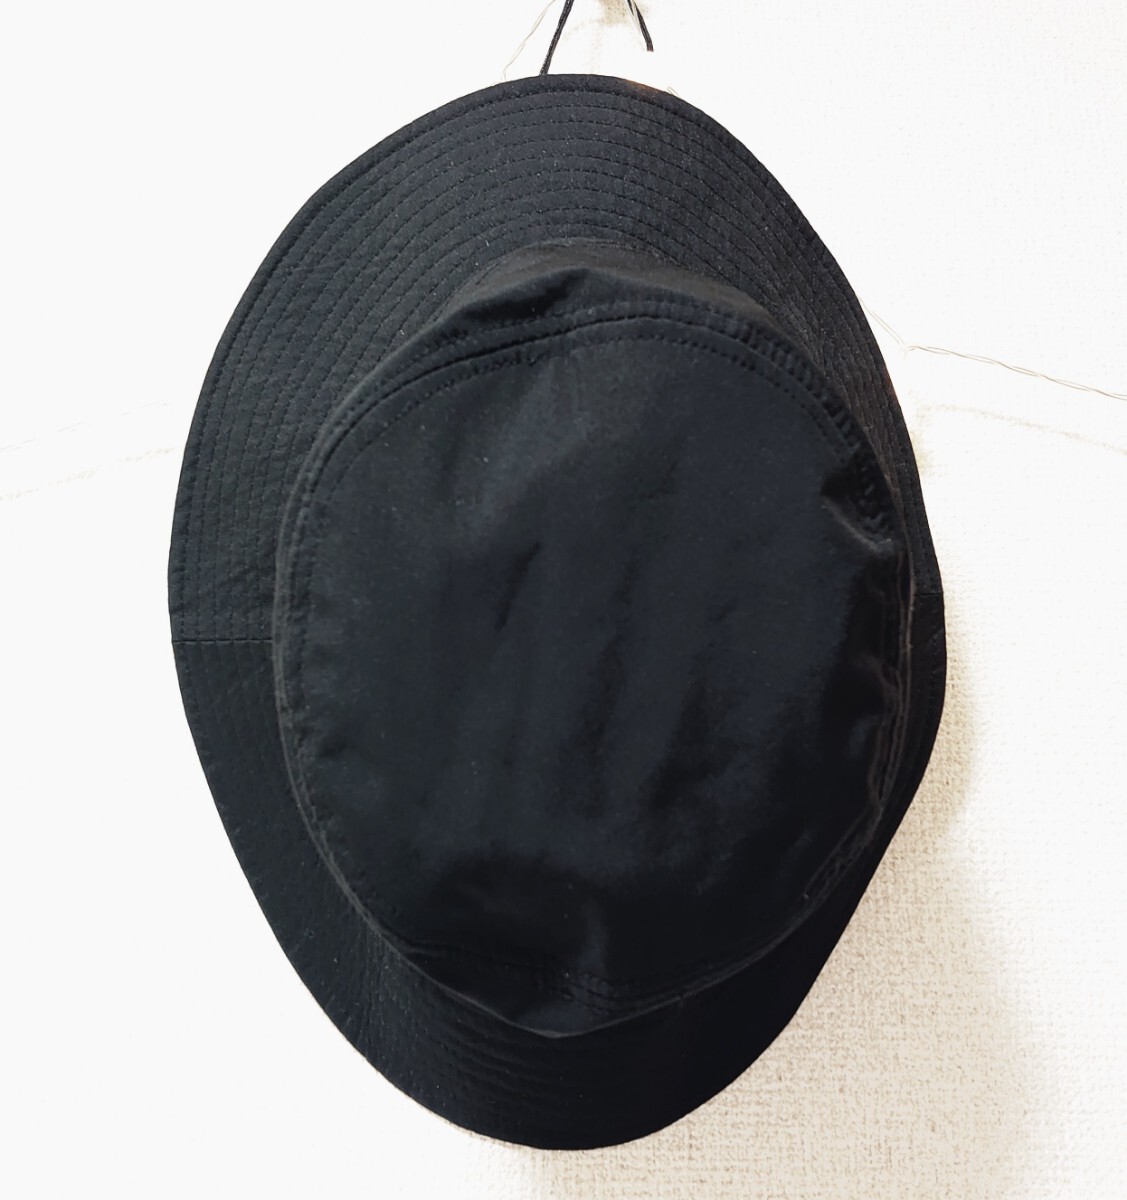 アウトドアー OUTDOOR BLACK ブラック コンパクト 男女兼用 ユニセックス サファリハット 帽子 hat ハットの画像2